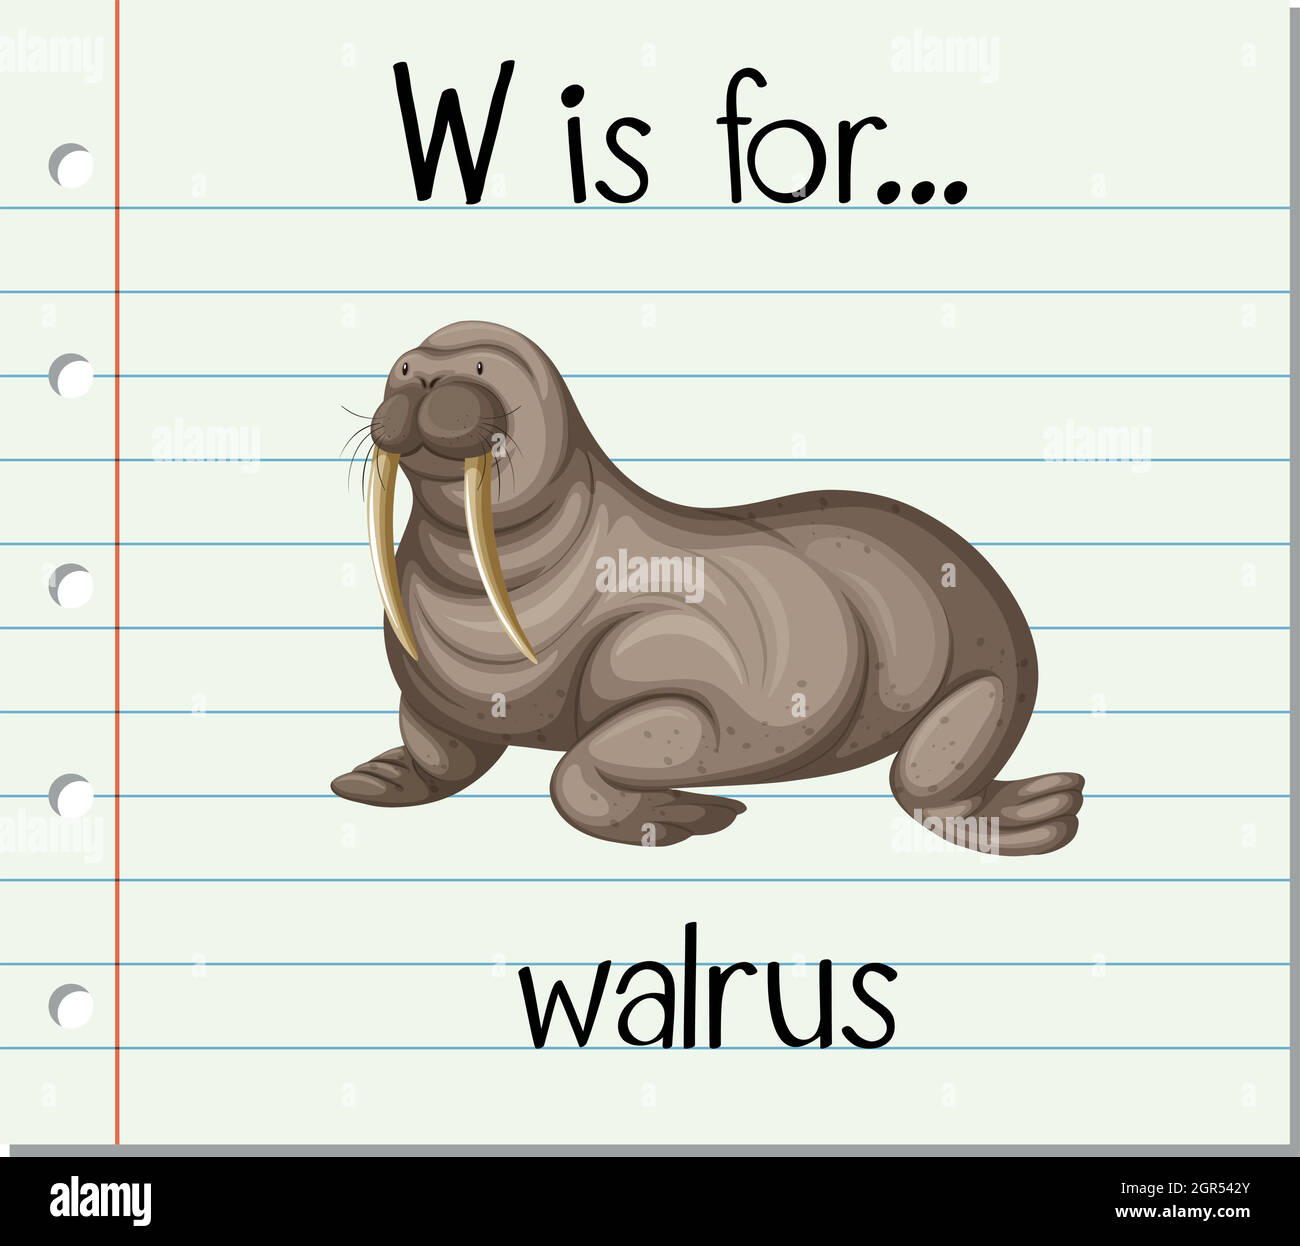 58 imágenes, fotos de stock, objetos en 3D y vectores sobre The only modern  species of the walrus family